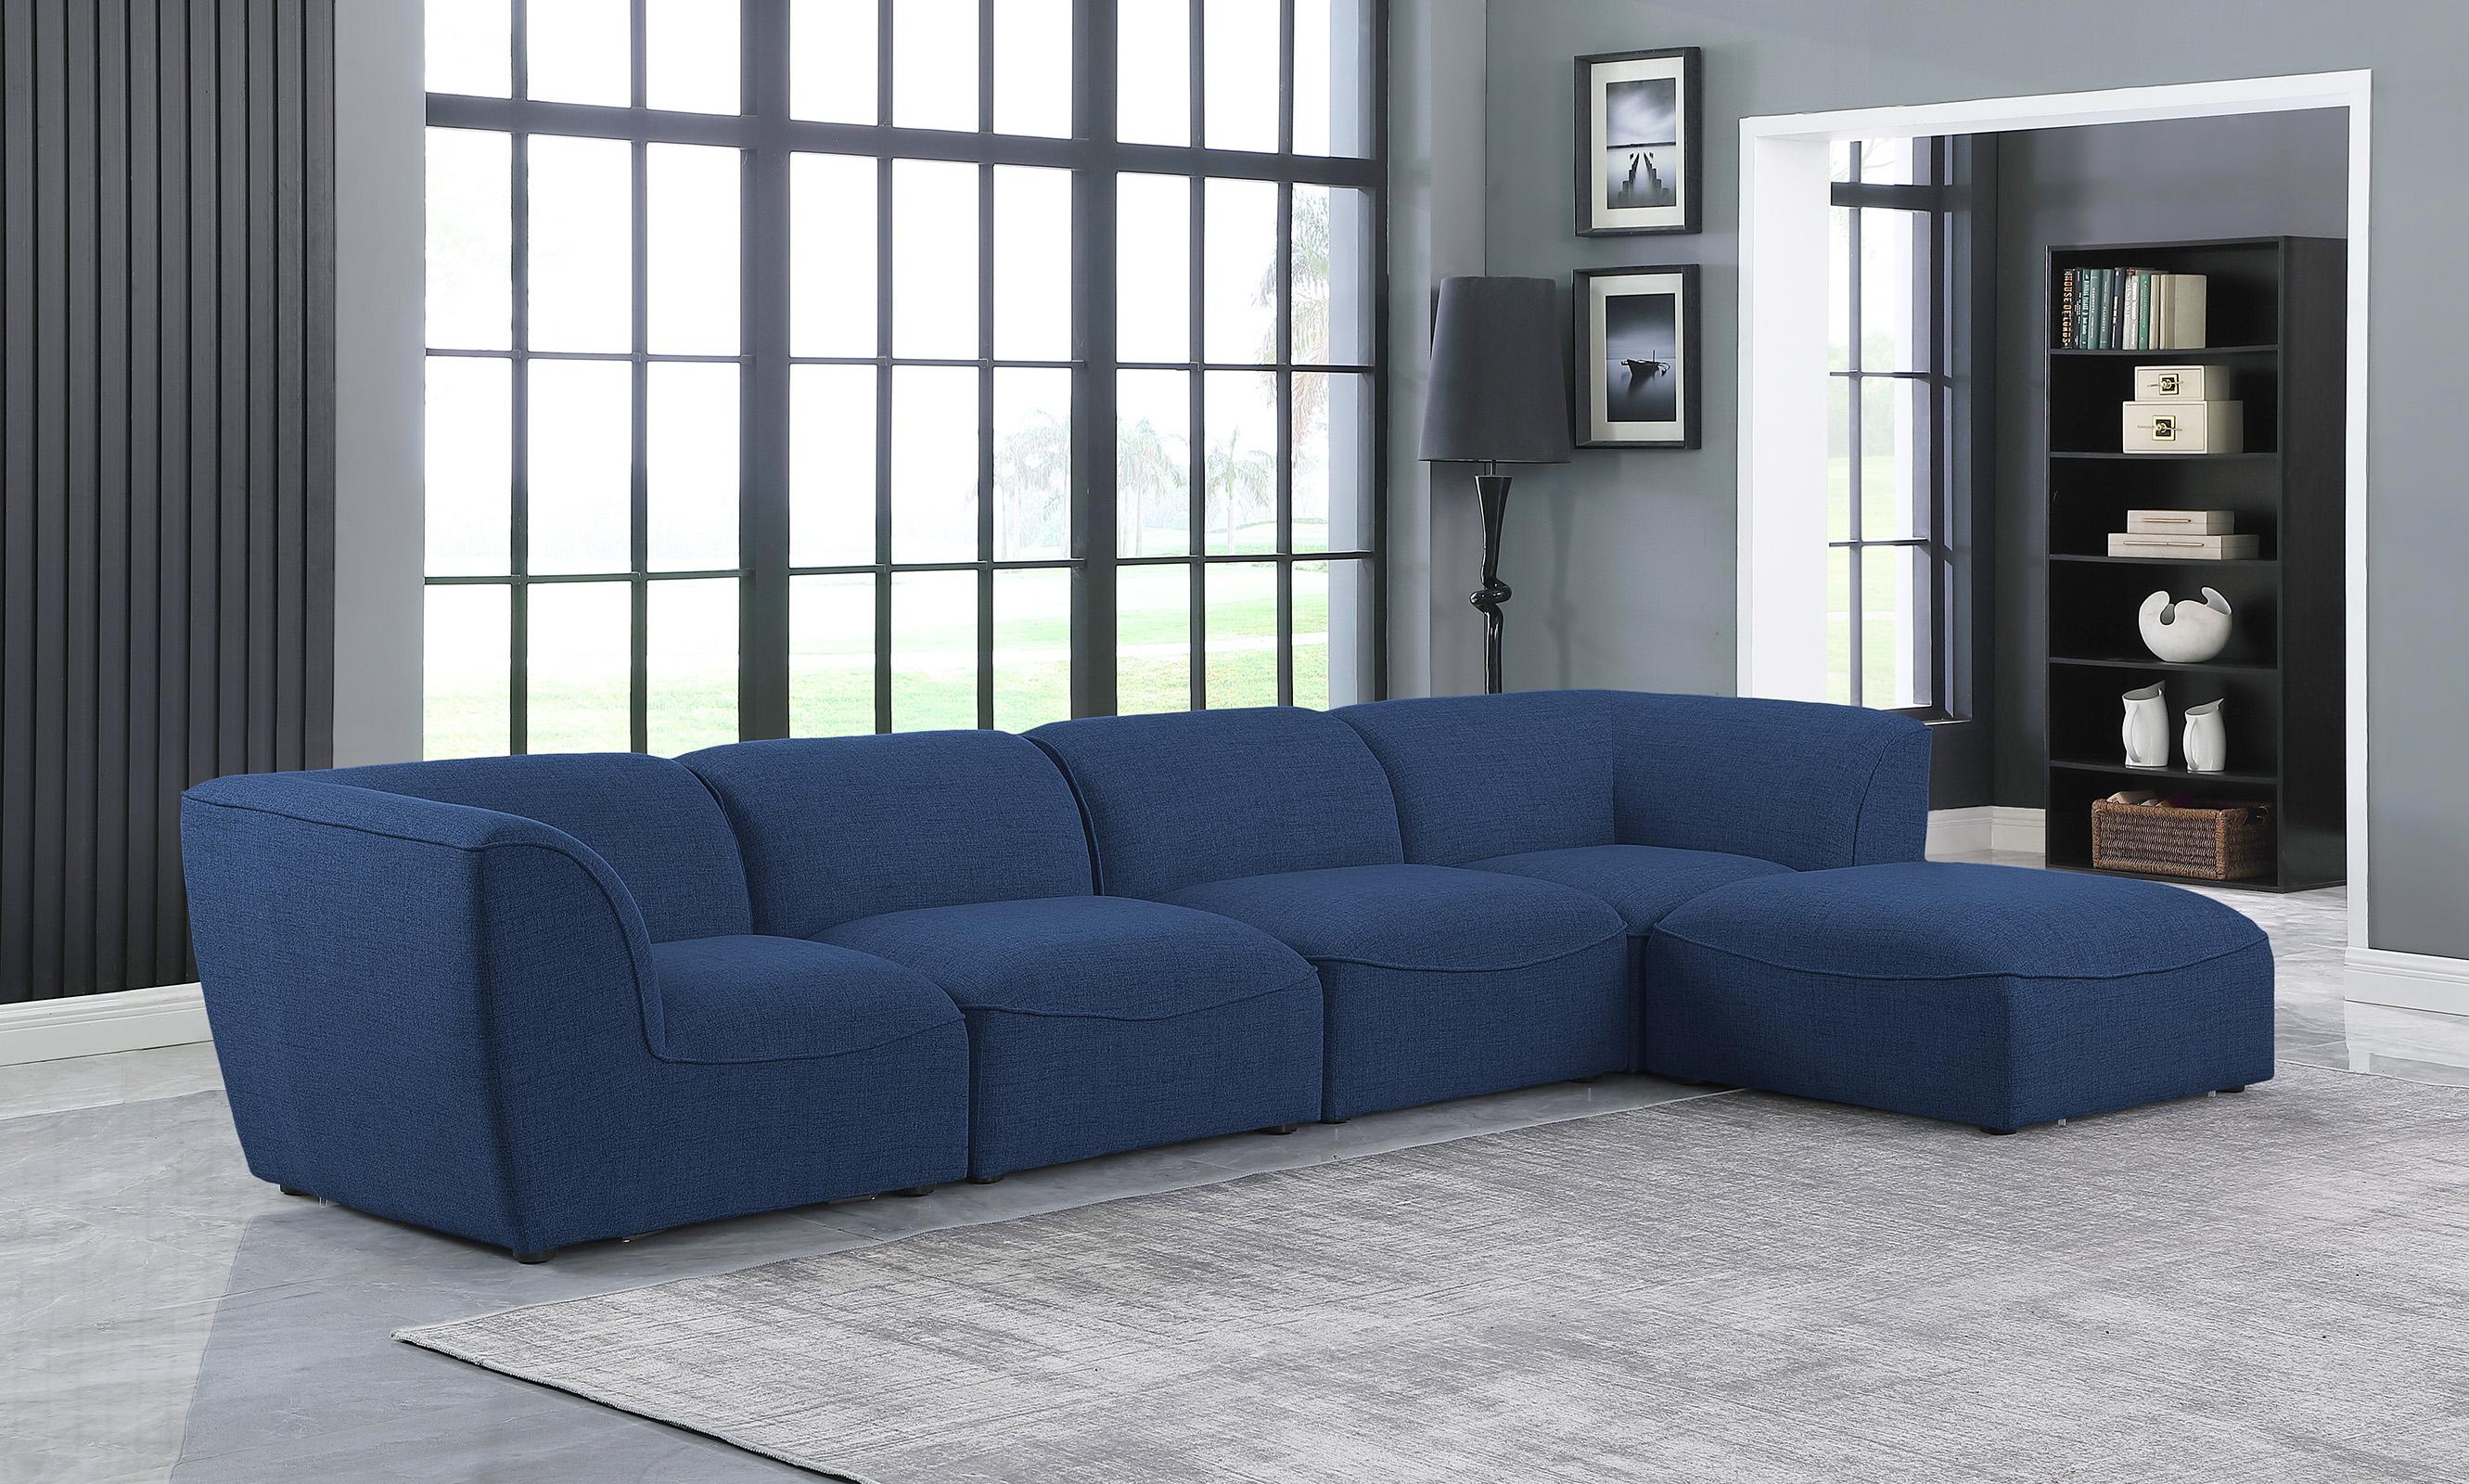 

    
Meridian Furniture MIRAMAR 683Navy-Sec5A Modular Sectional Sofa Navy 683Navy-Sec5A
